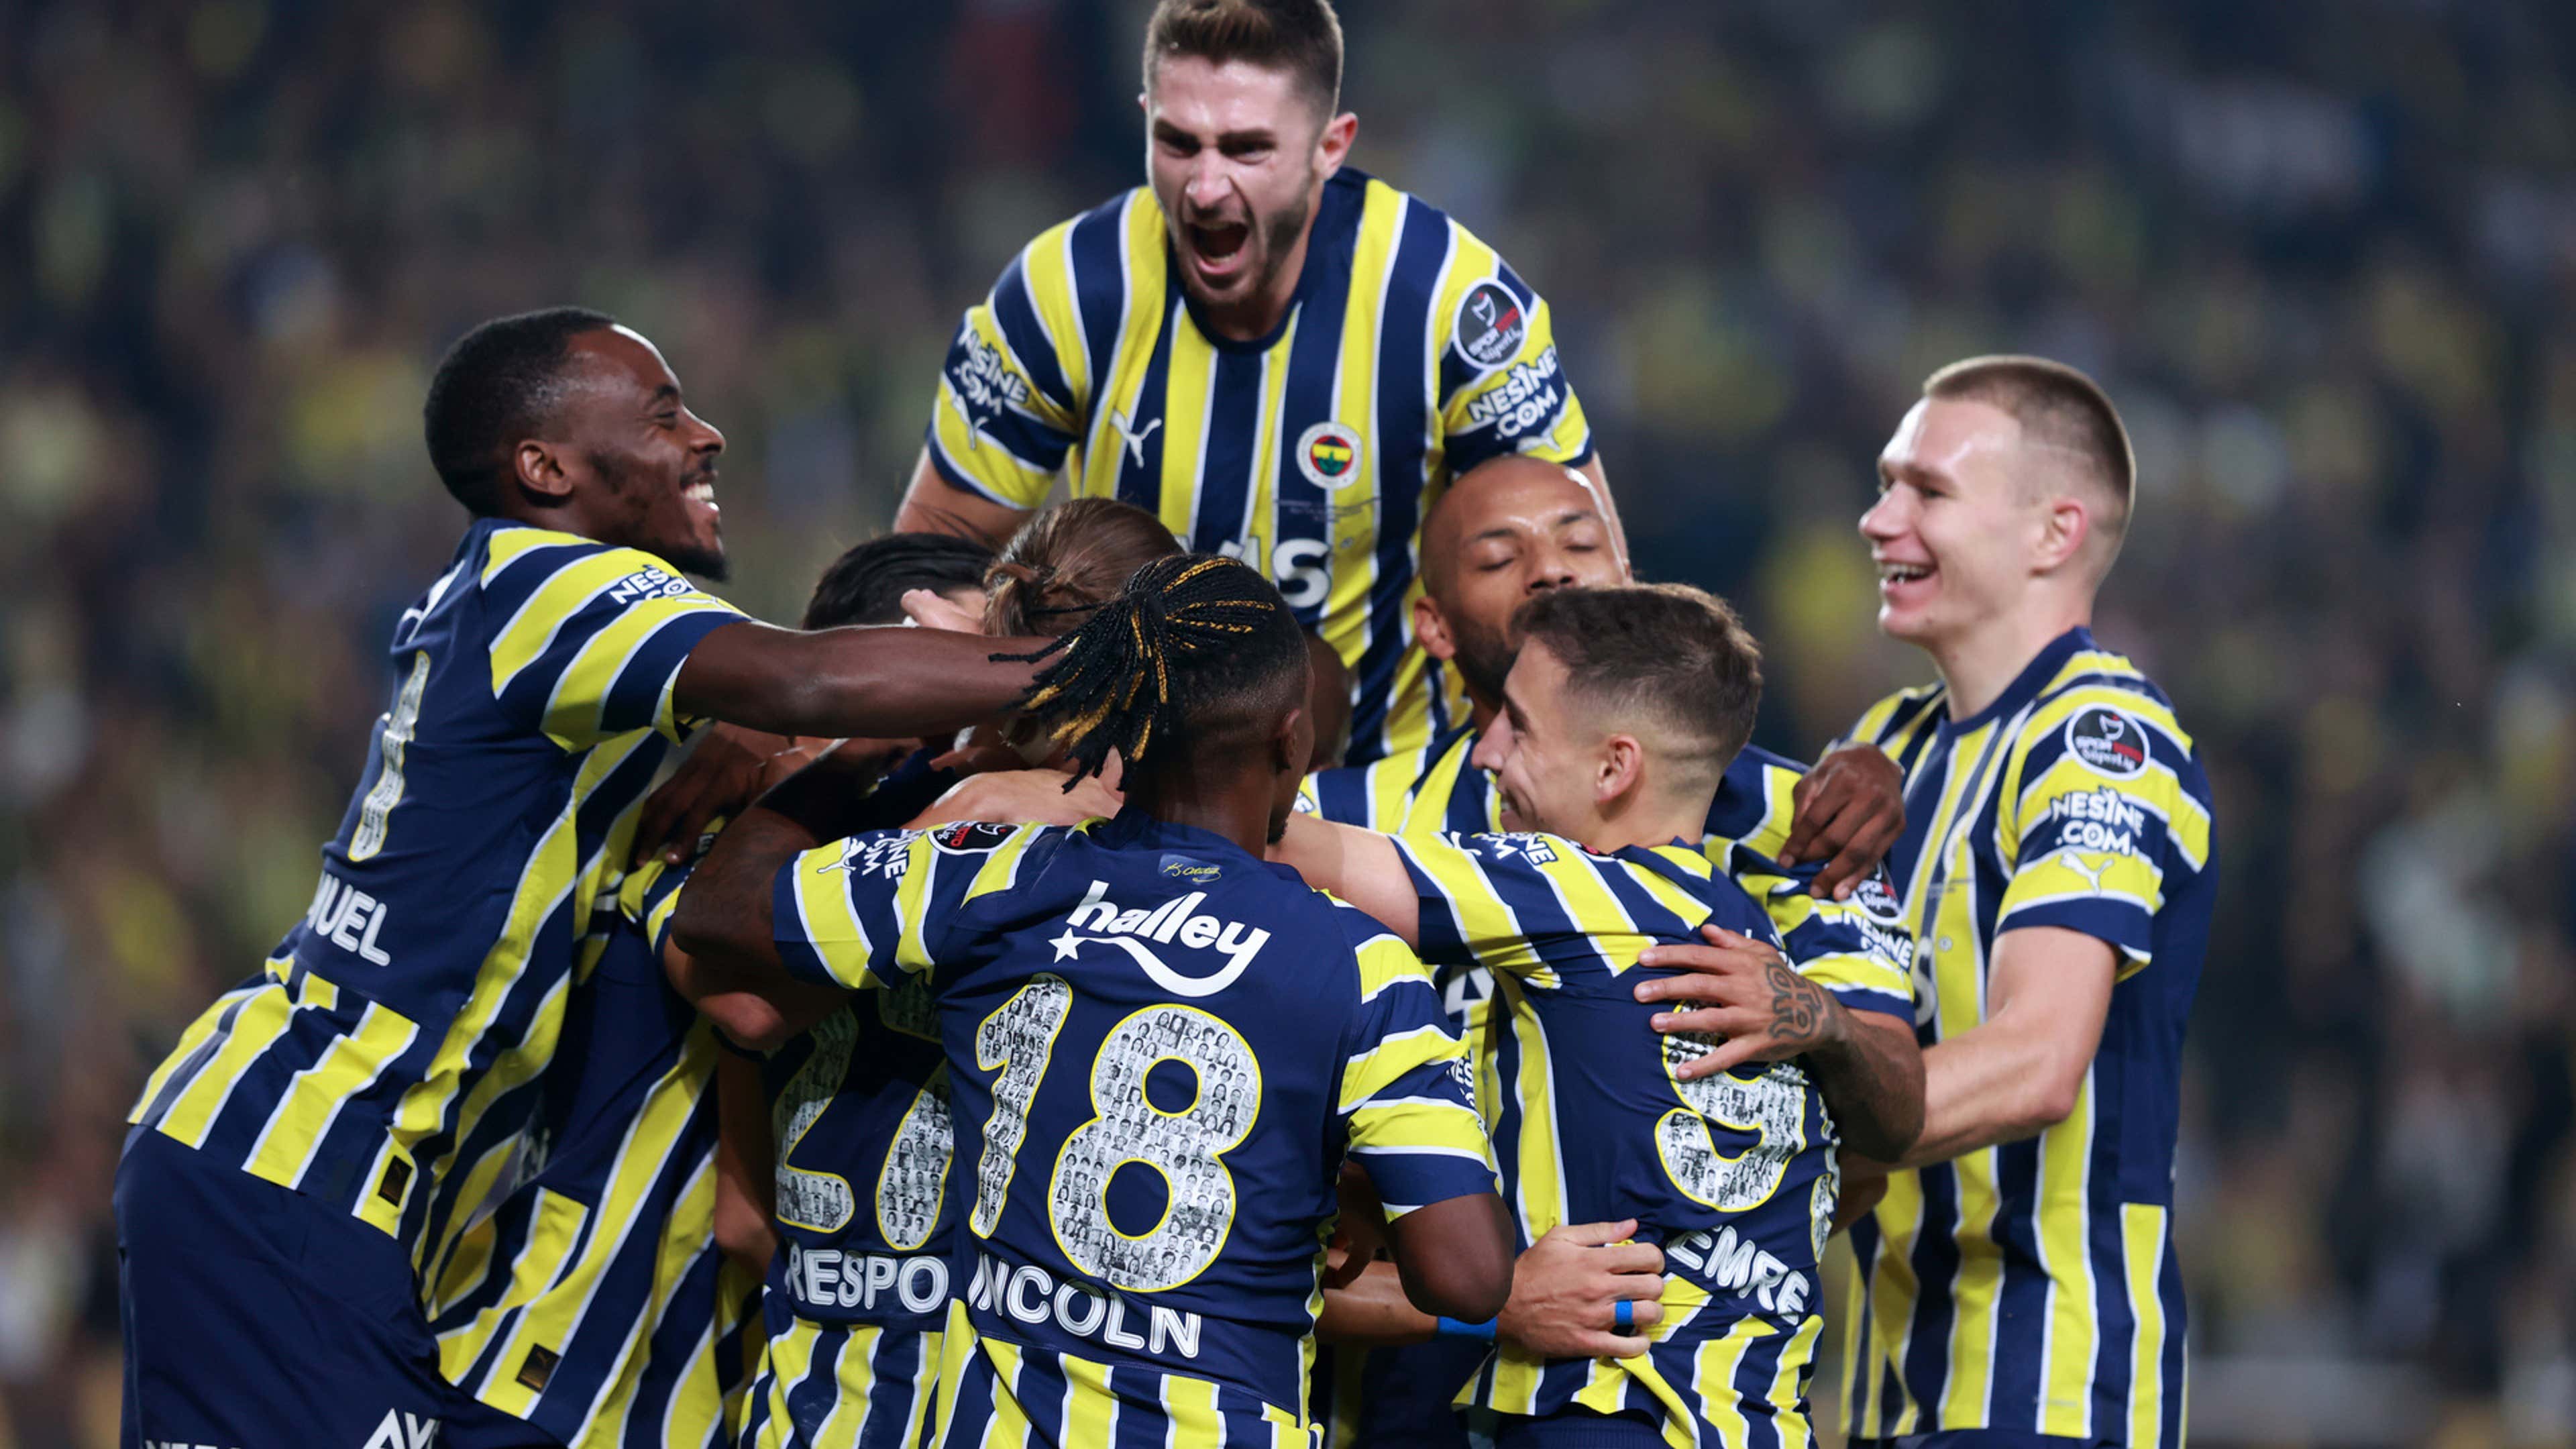 Kadıköy'de 9 gollü gecenin galibi Fenerbahçe oldu: Karşılaşma 4-3 Fenerbahçe üstünlüğüyle sonlandı | Goal.com Türkçe